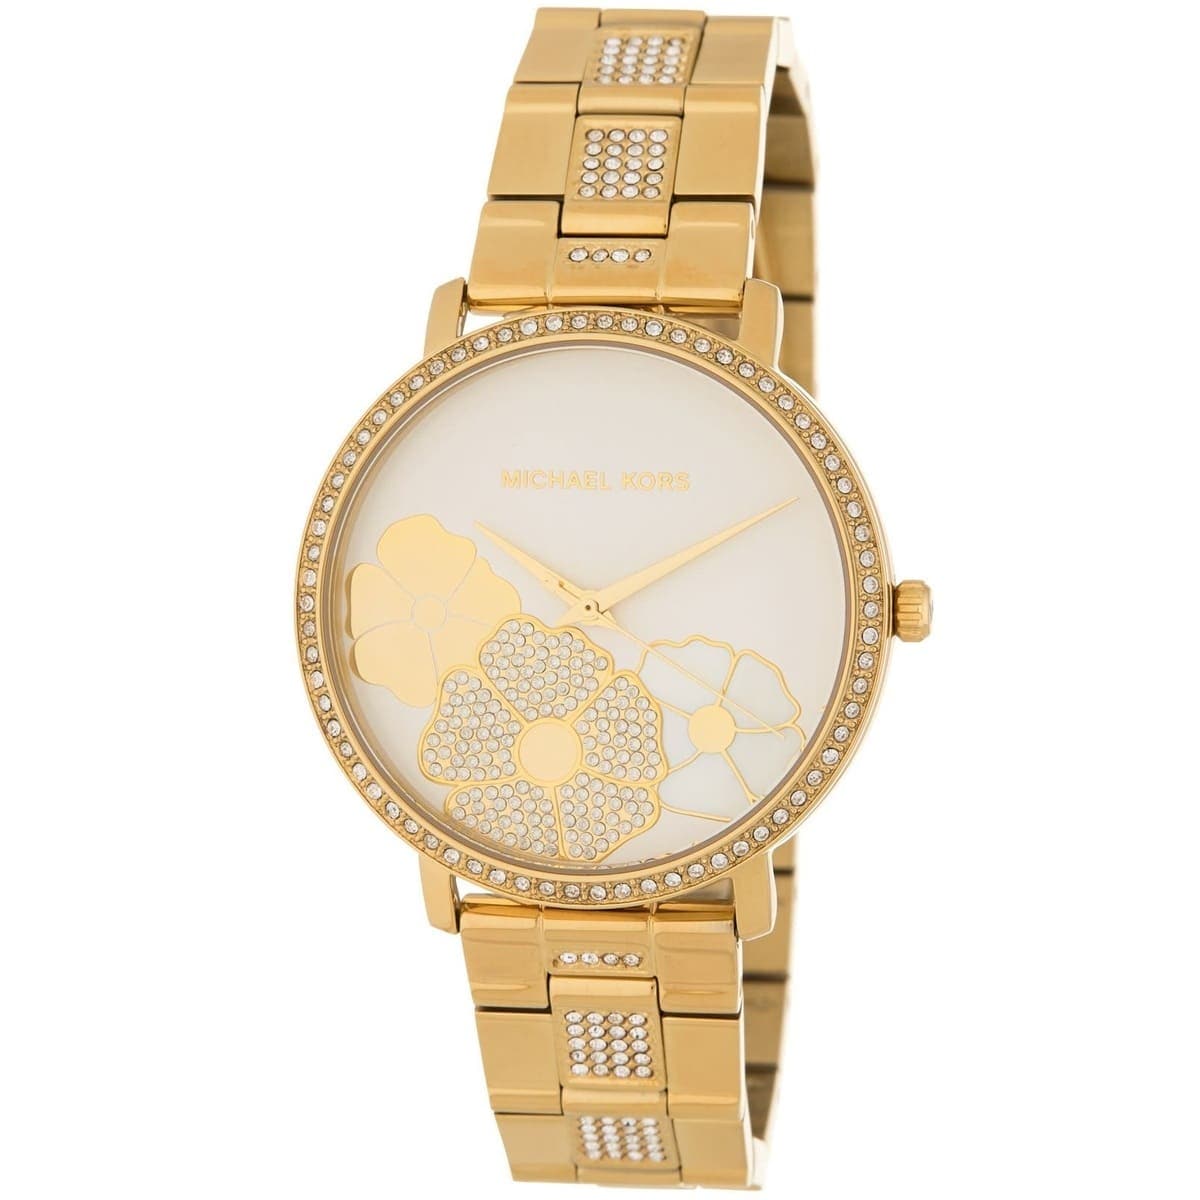 Michael Kors women wrist watch turquoise gold jewelry fashion  eBay